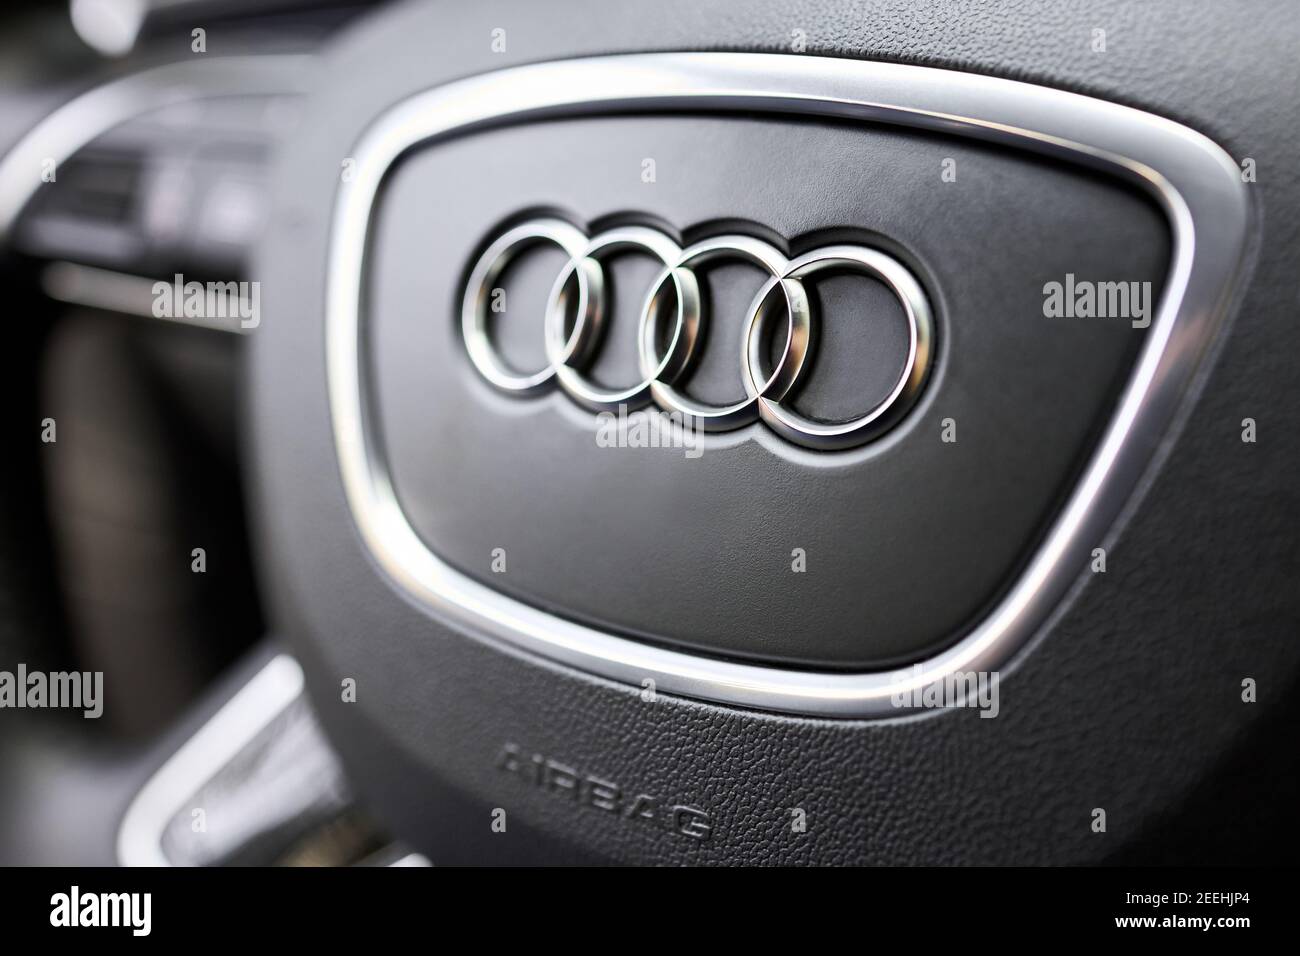 GRODNO, BÉLARUS - DÉCEMBRE 2019 : logo Audi A6 4G C7 sur volant et airbag sélectif. Concept de conduite sécuritaire. Banque D'Images